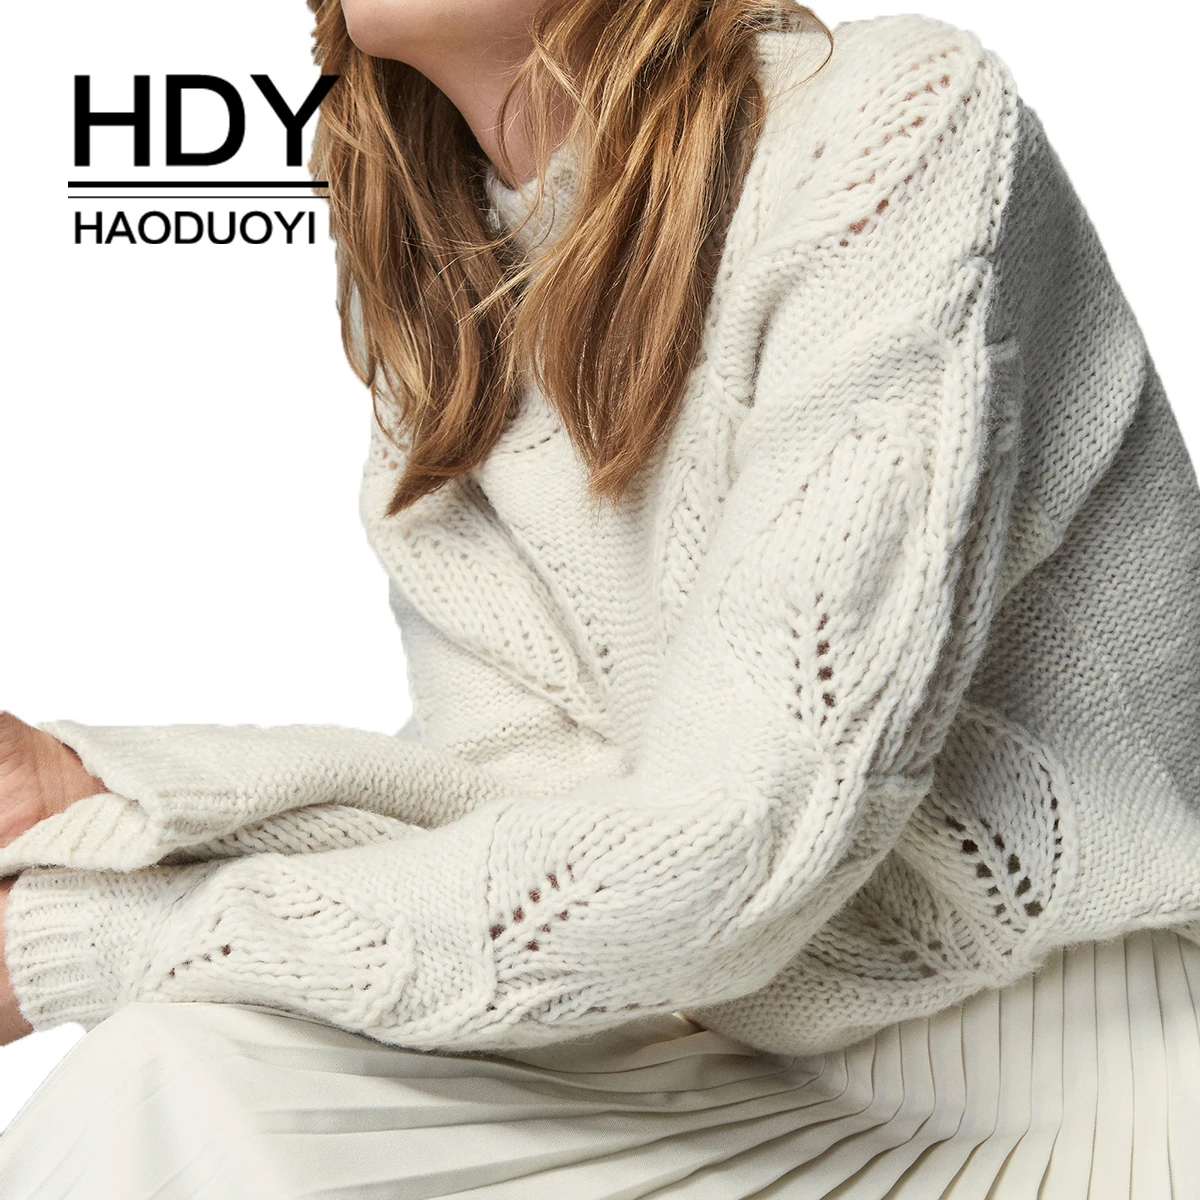 HDY Haoduoyi Новое поступление бежевый вязаный ажурный Свободный пуловер с полуворотником свитер осеньЗима